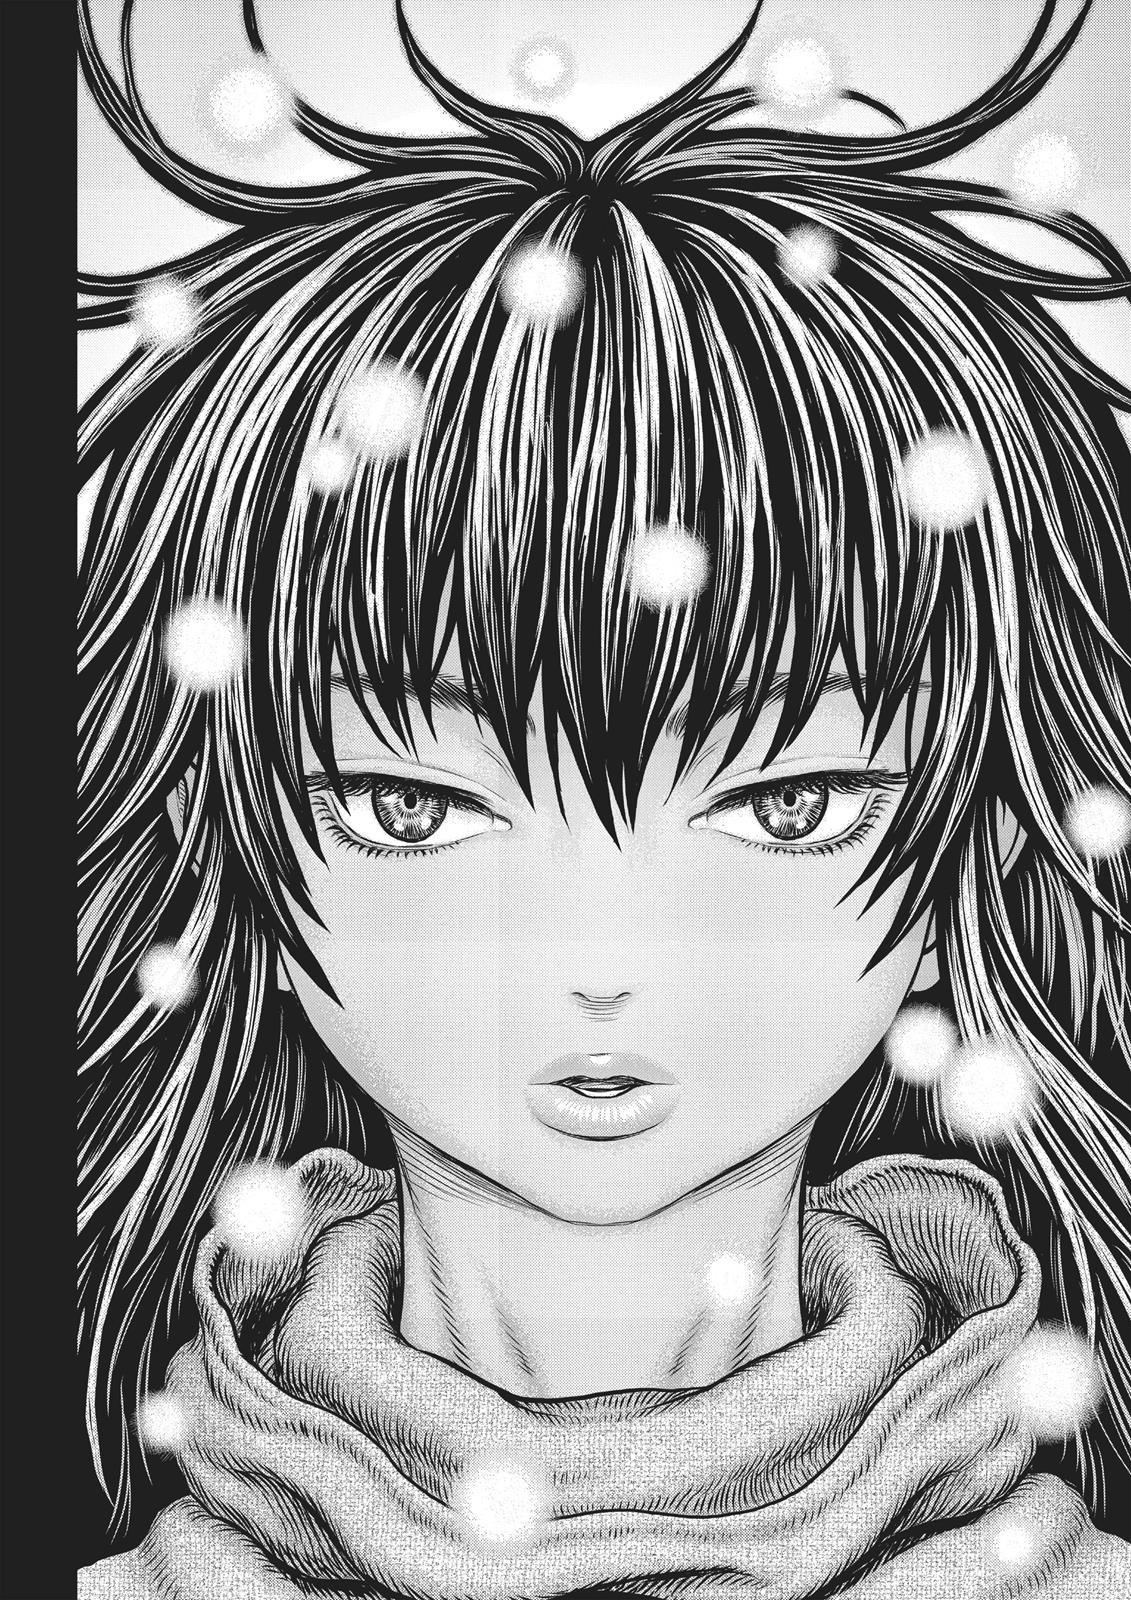 Berserk Manga Chapter 354 image 19